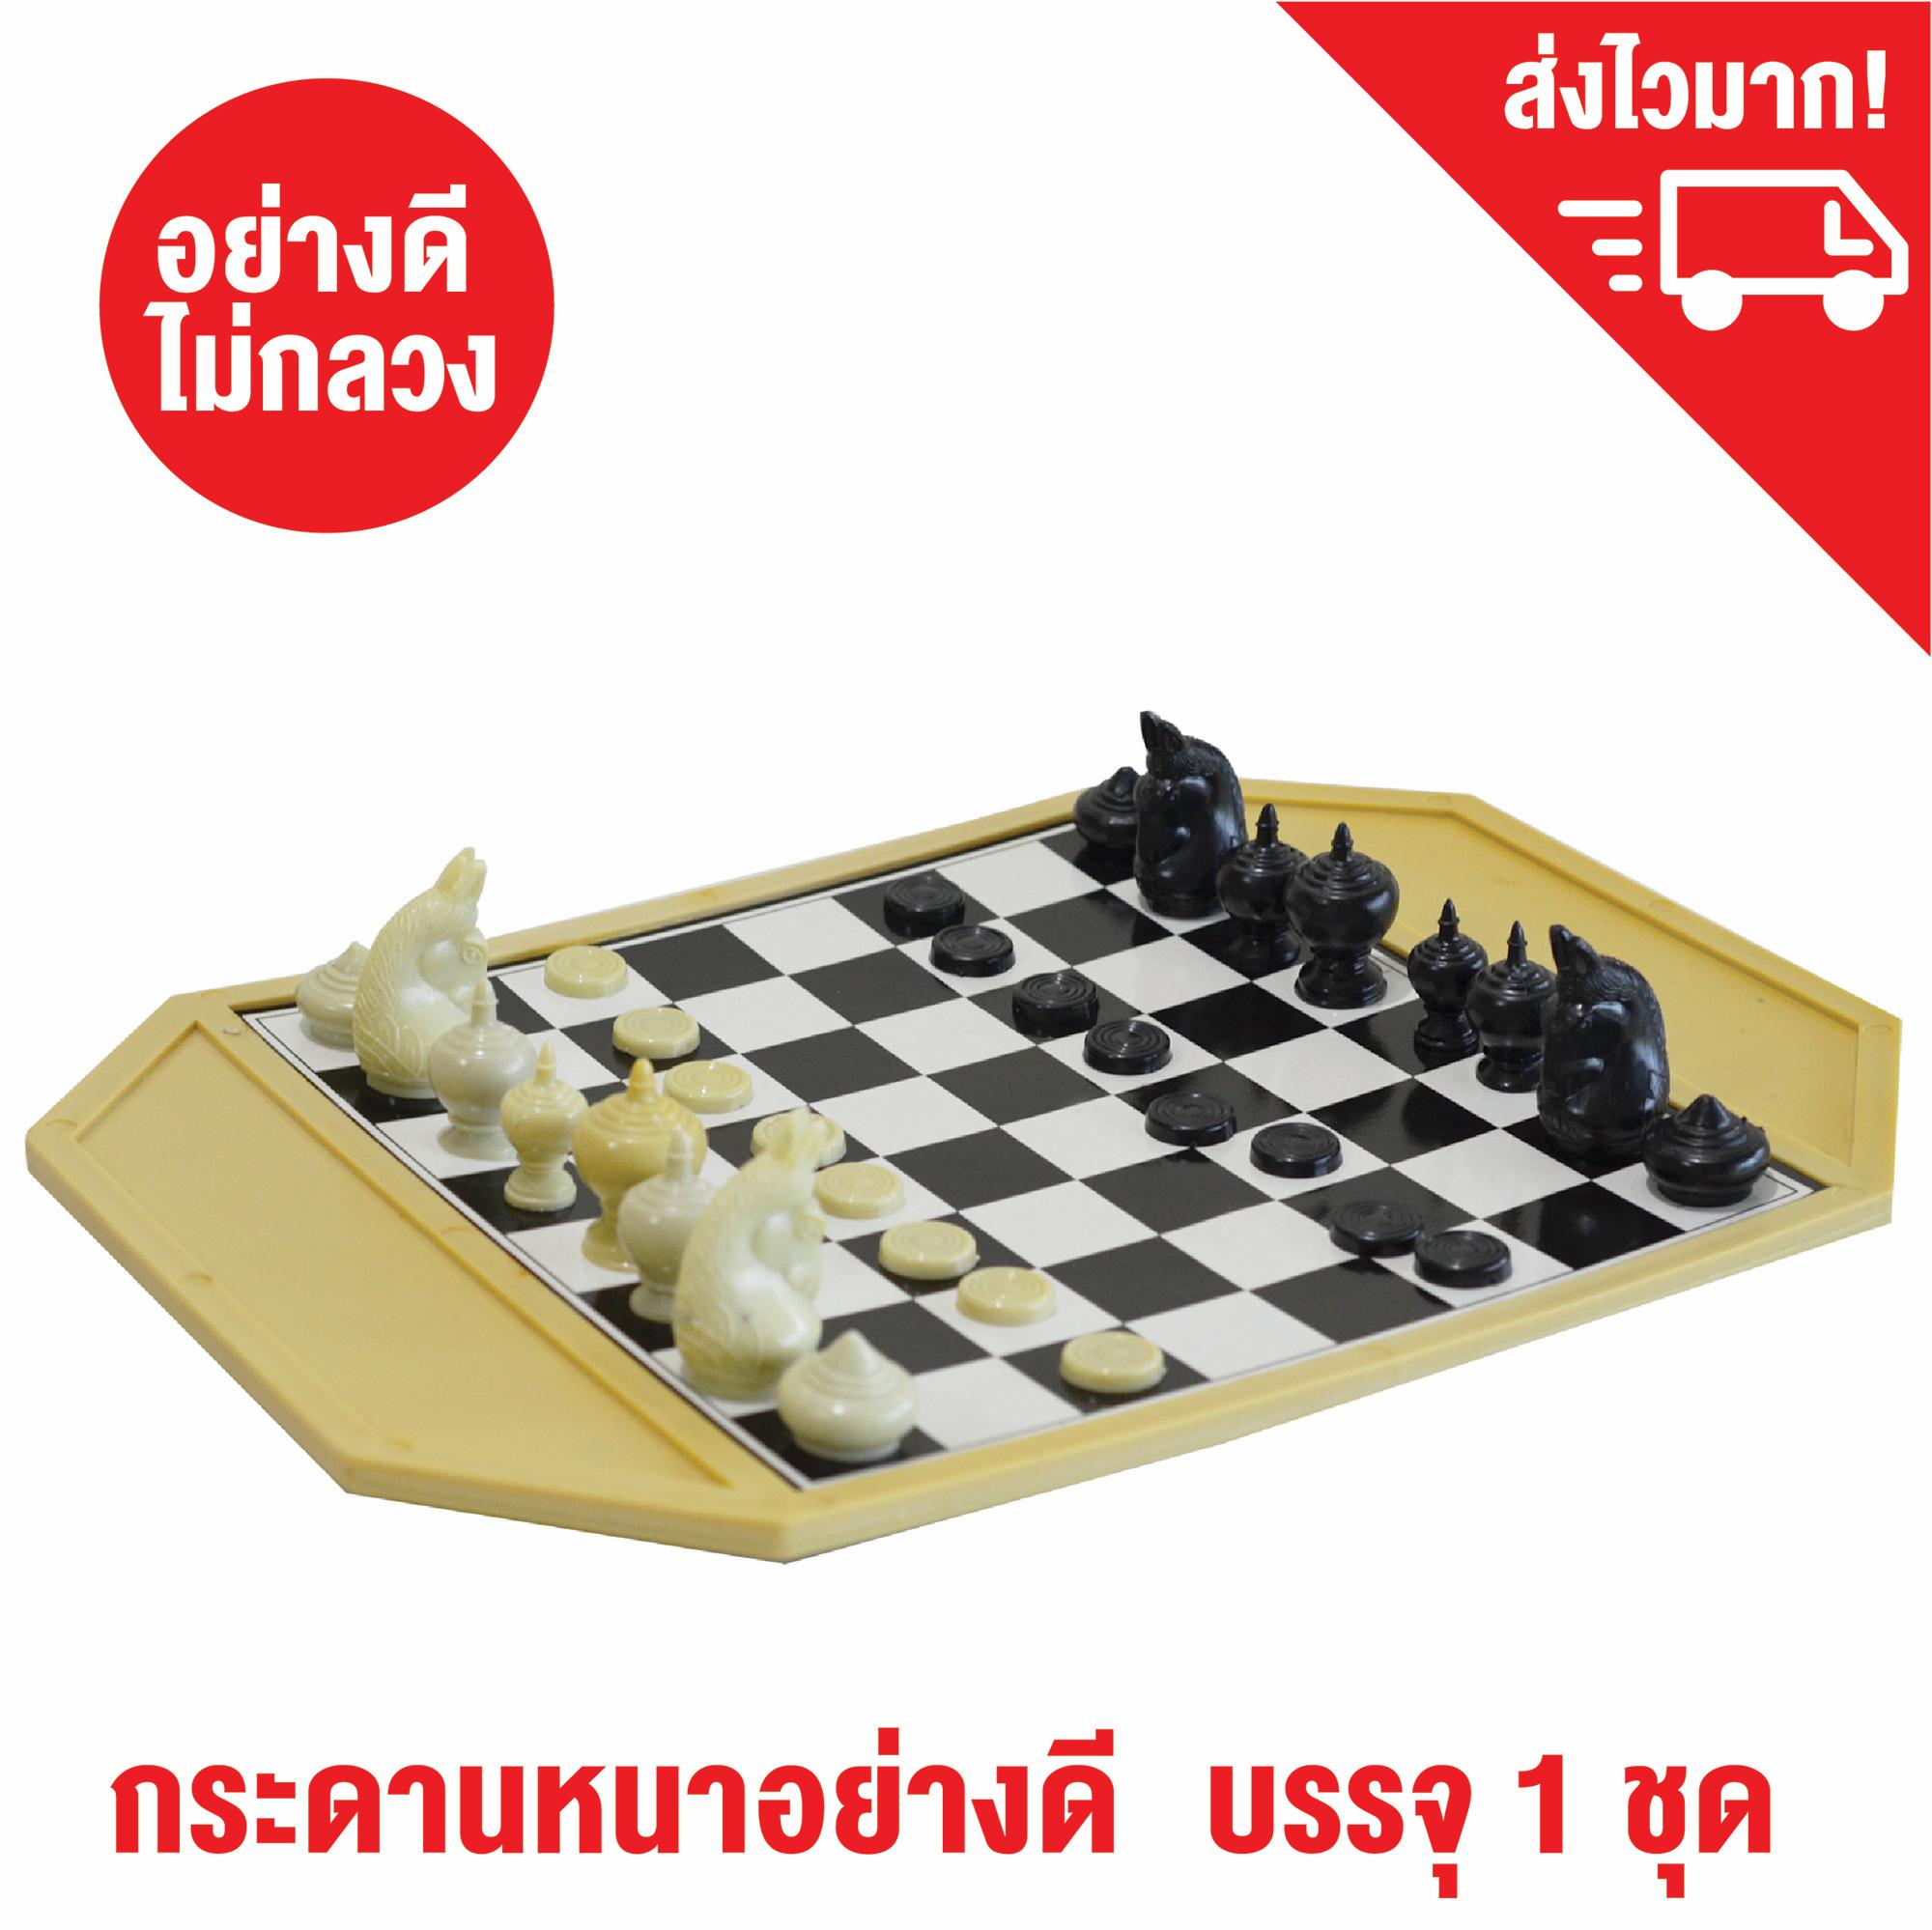 หมากรุกไทย พลาสติก พร้อมกระดานพลาสติก เกมส์หมากรุก เกมกระดาน Thai Chess